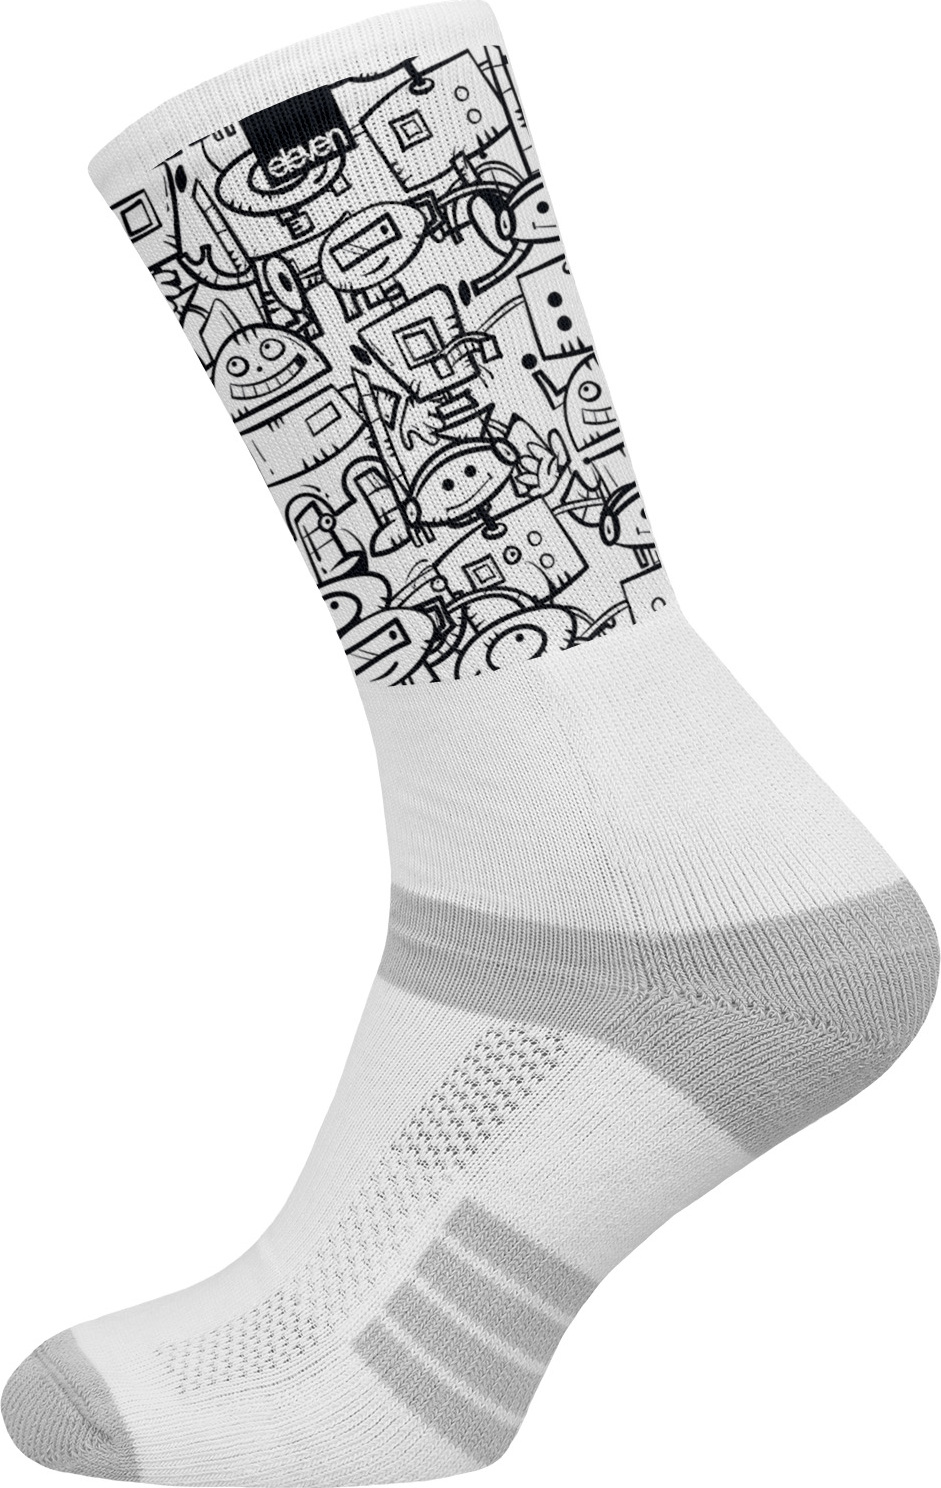 Ponožky ELEVEN Suba Botsketch bílé Velikost: S (36-38)